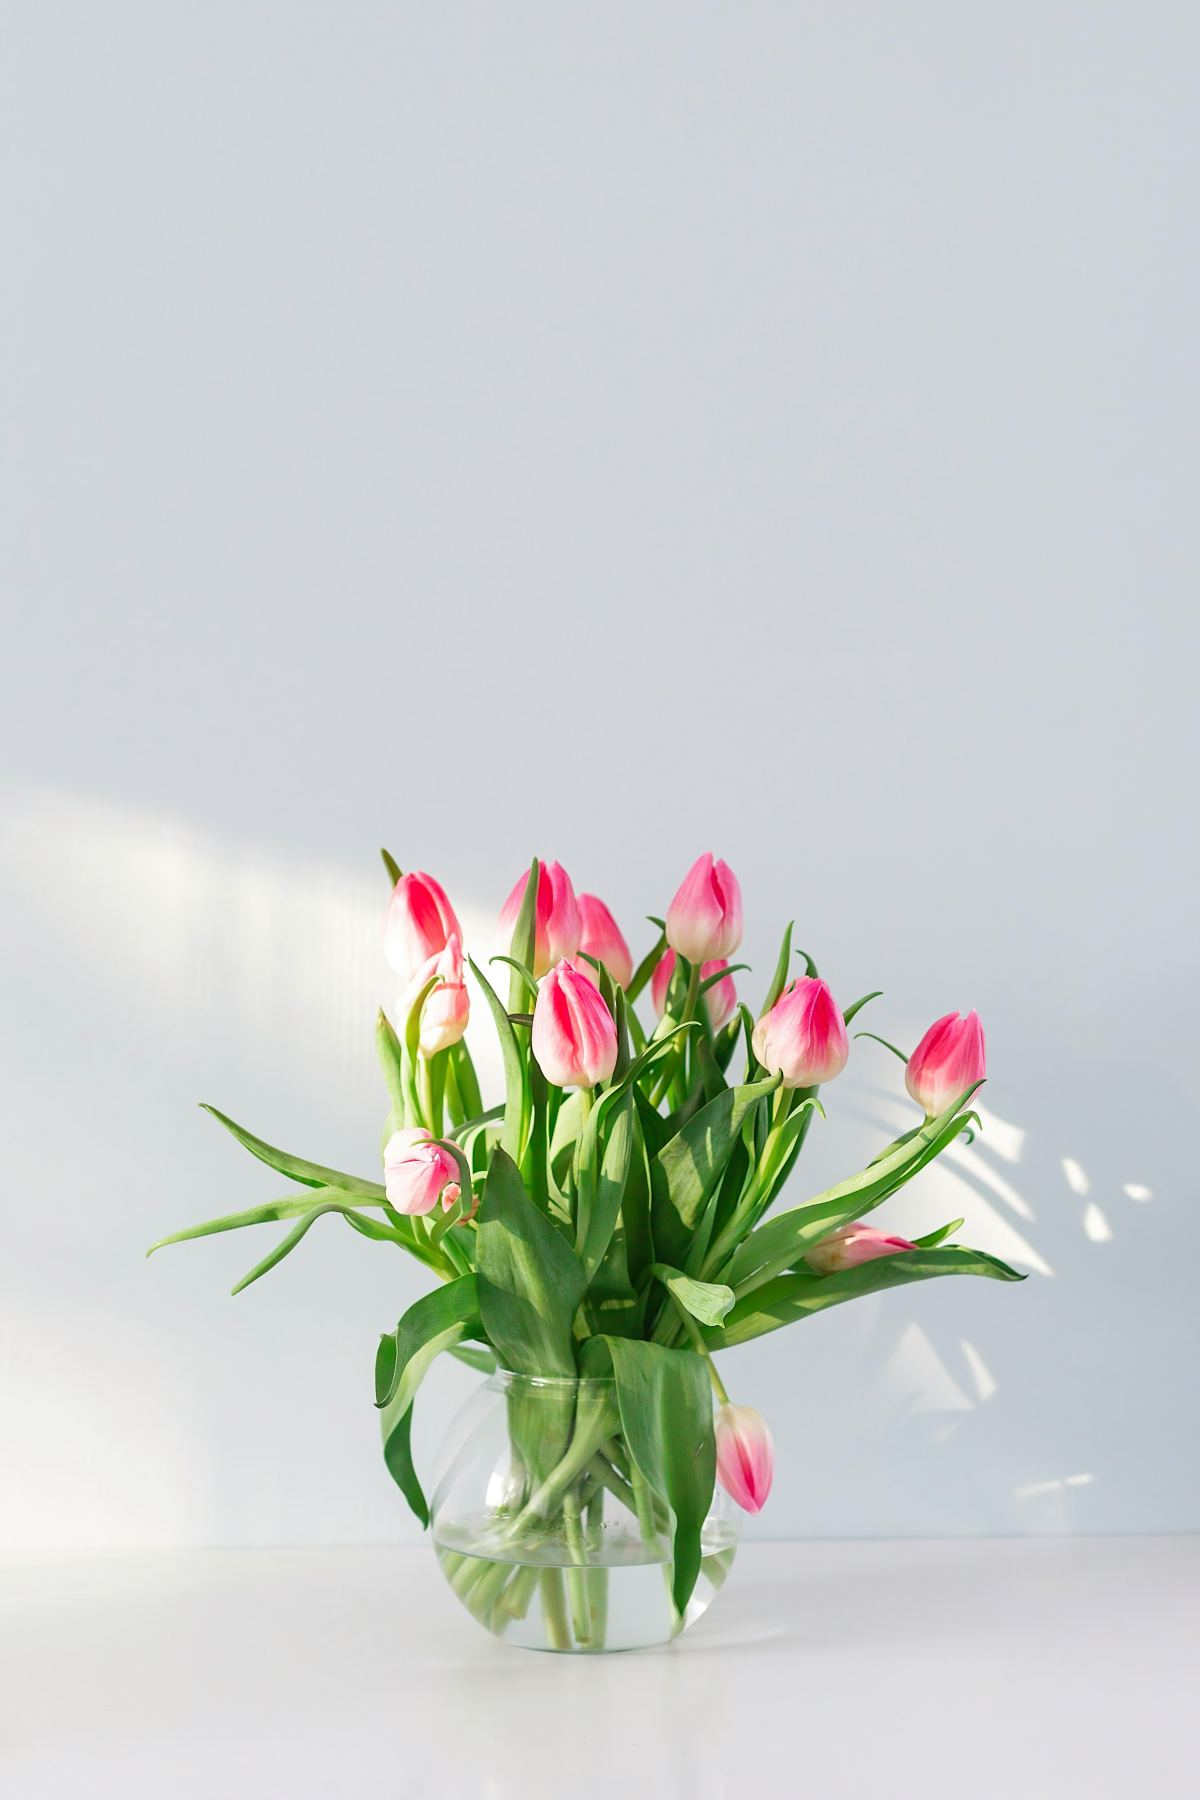 gartenschaufel neben frisch gepflanzten tulpen